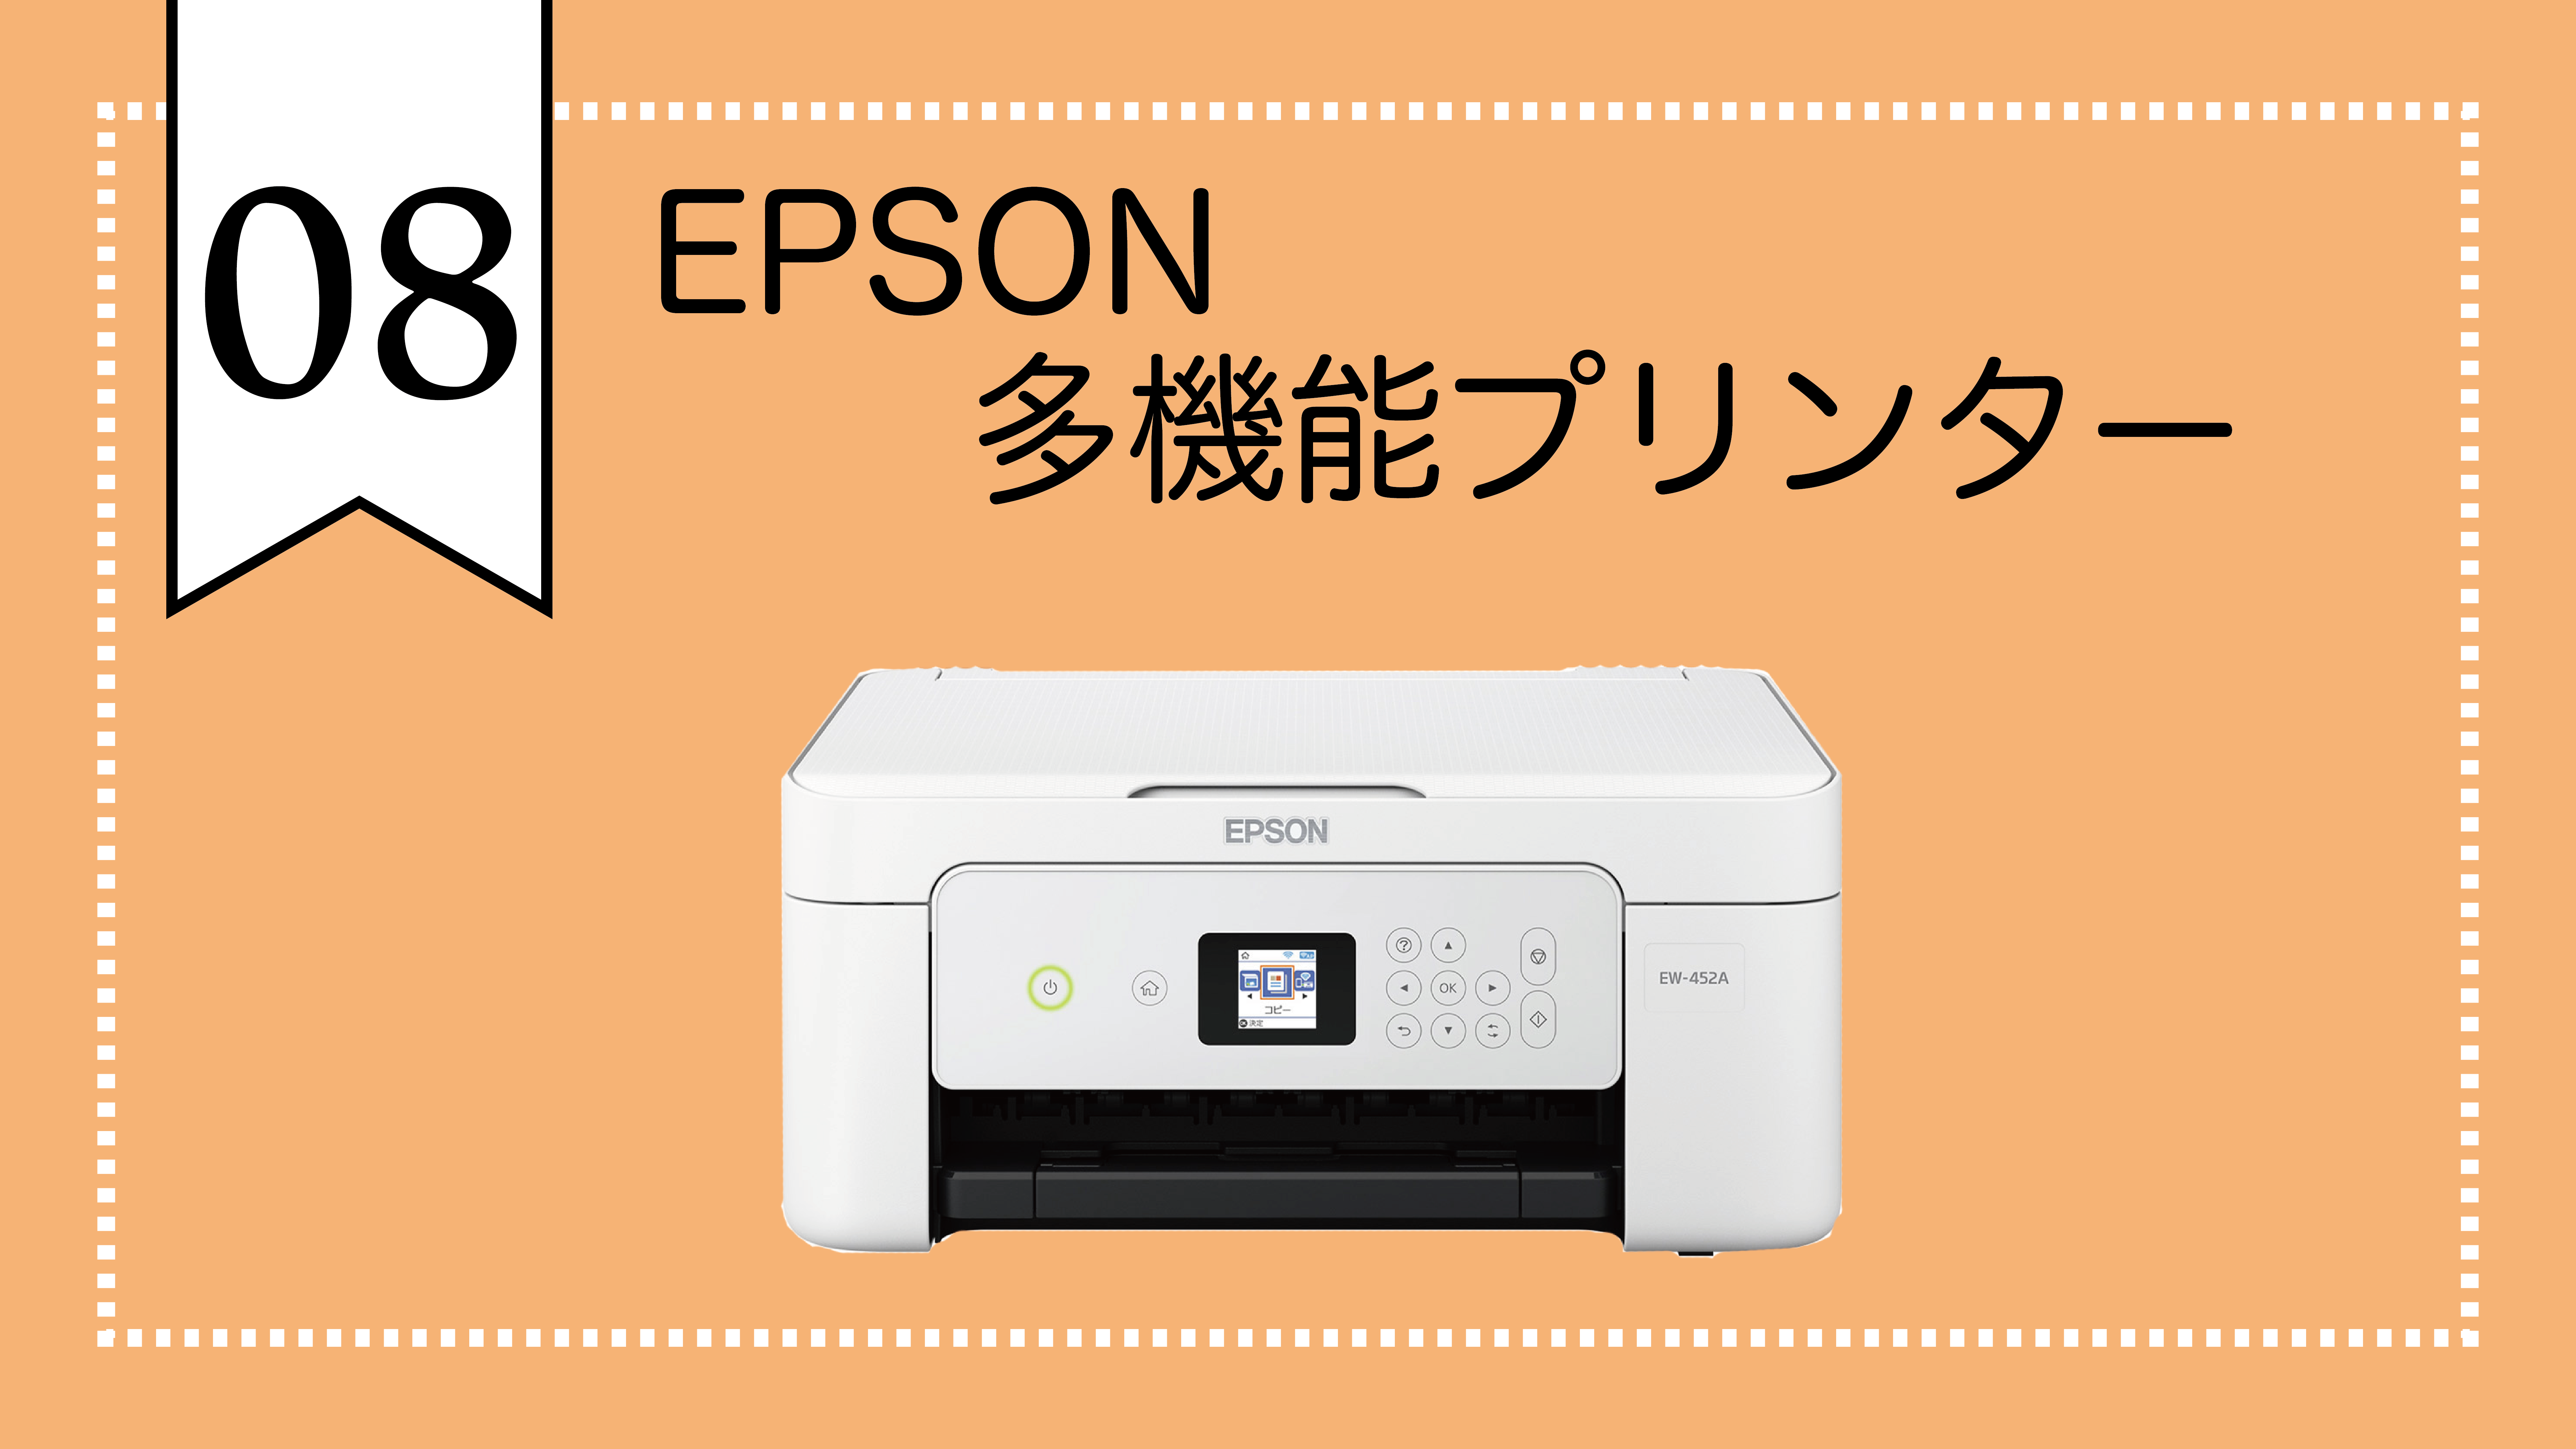 Epson多機能プリンター